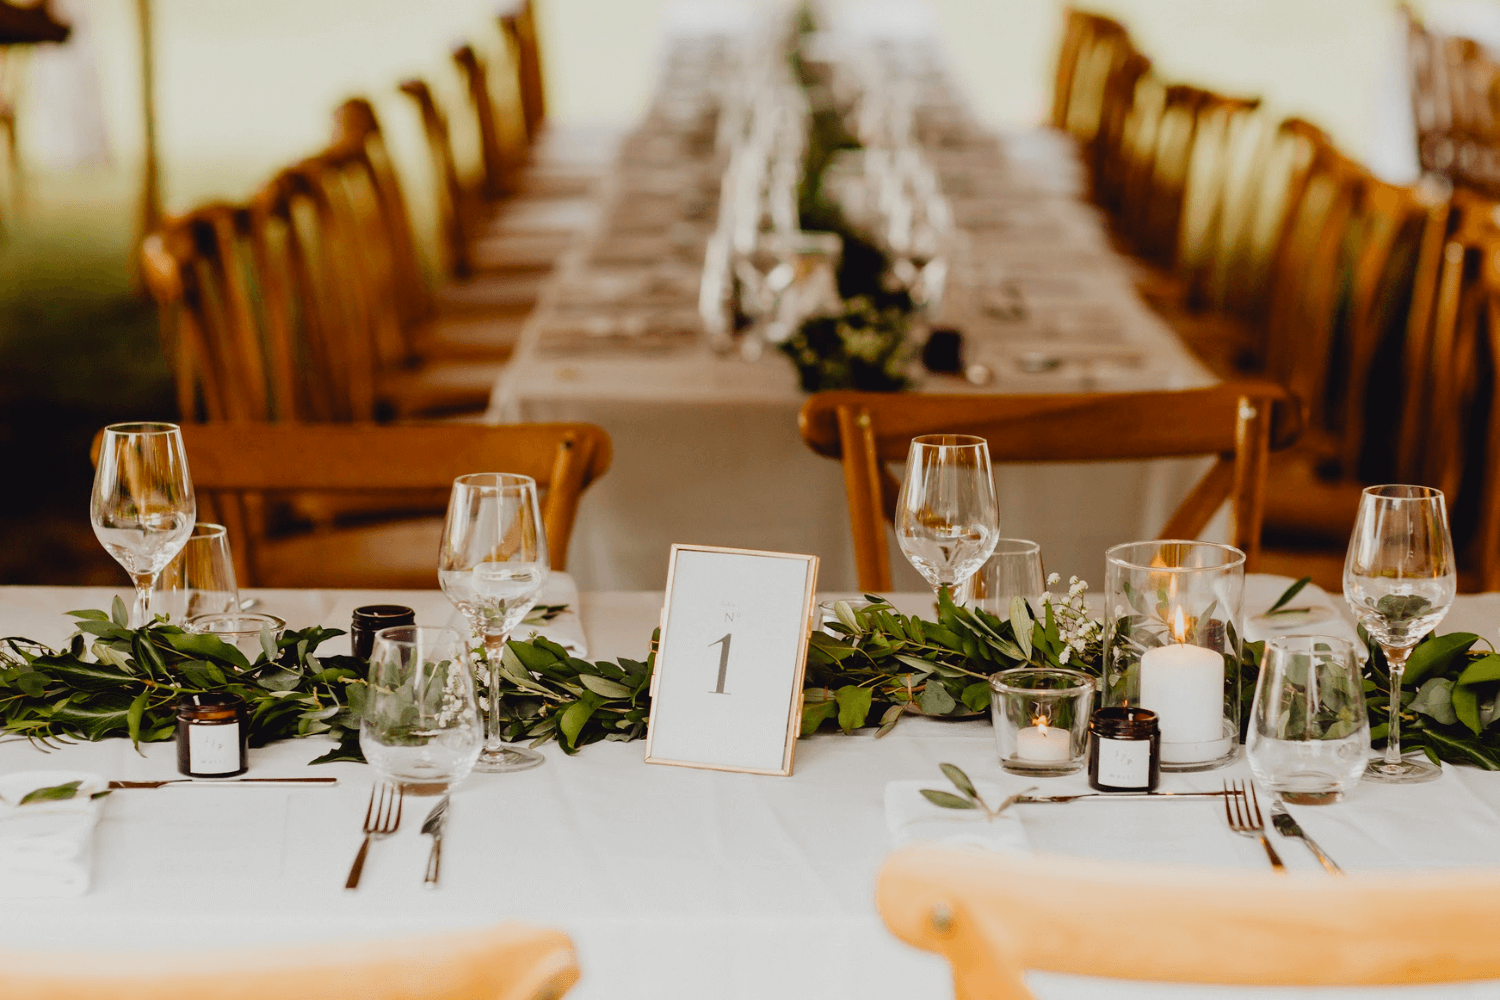 Une table de mariage recouverte d'une nappe blanche et agrémentée d'un chemin de table végétal.